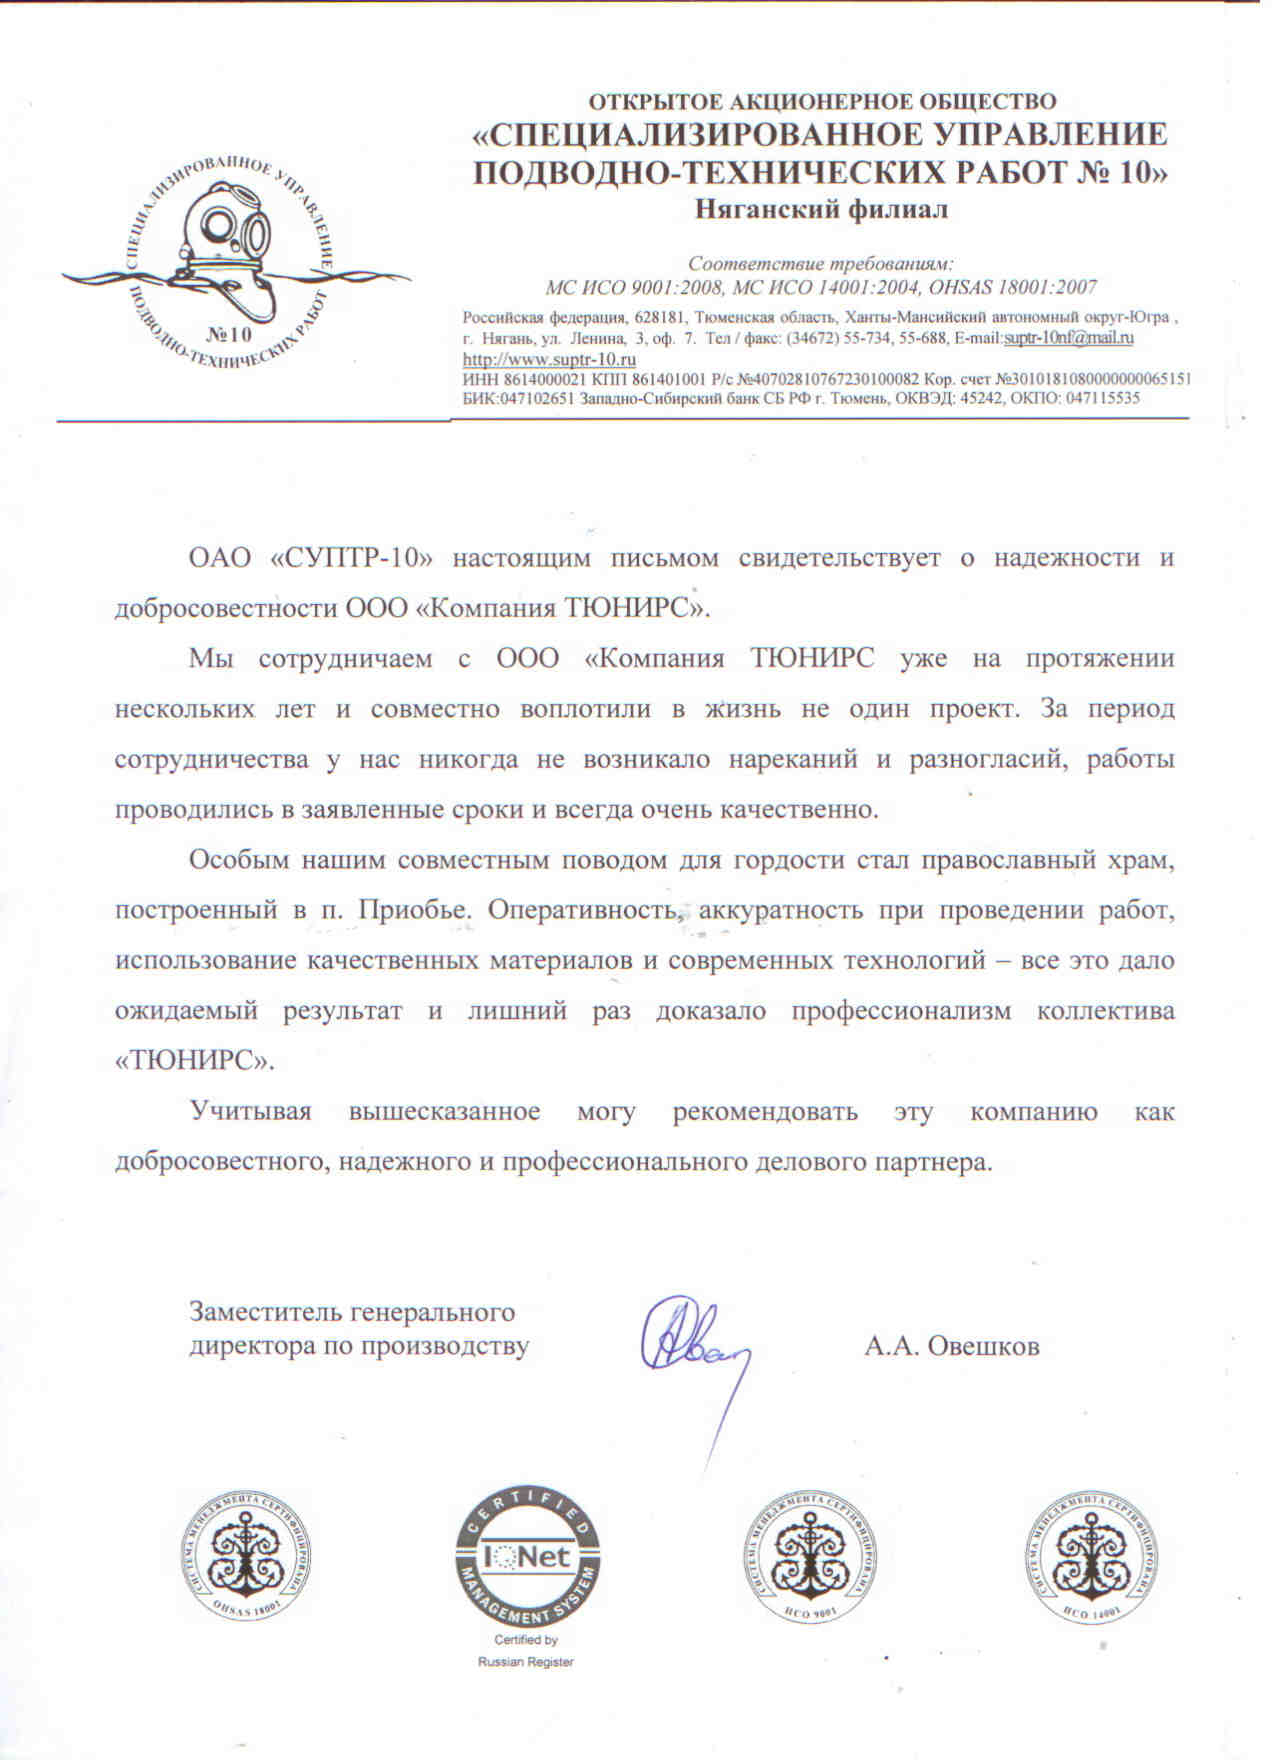 ОАО Специализированное управление подводно-технических работ №10